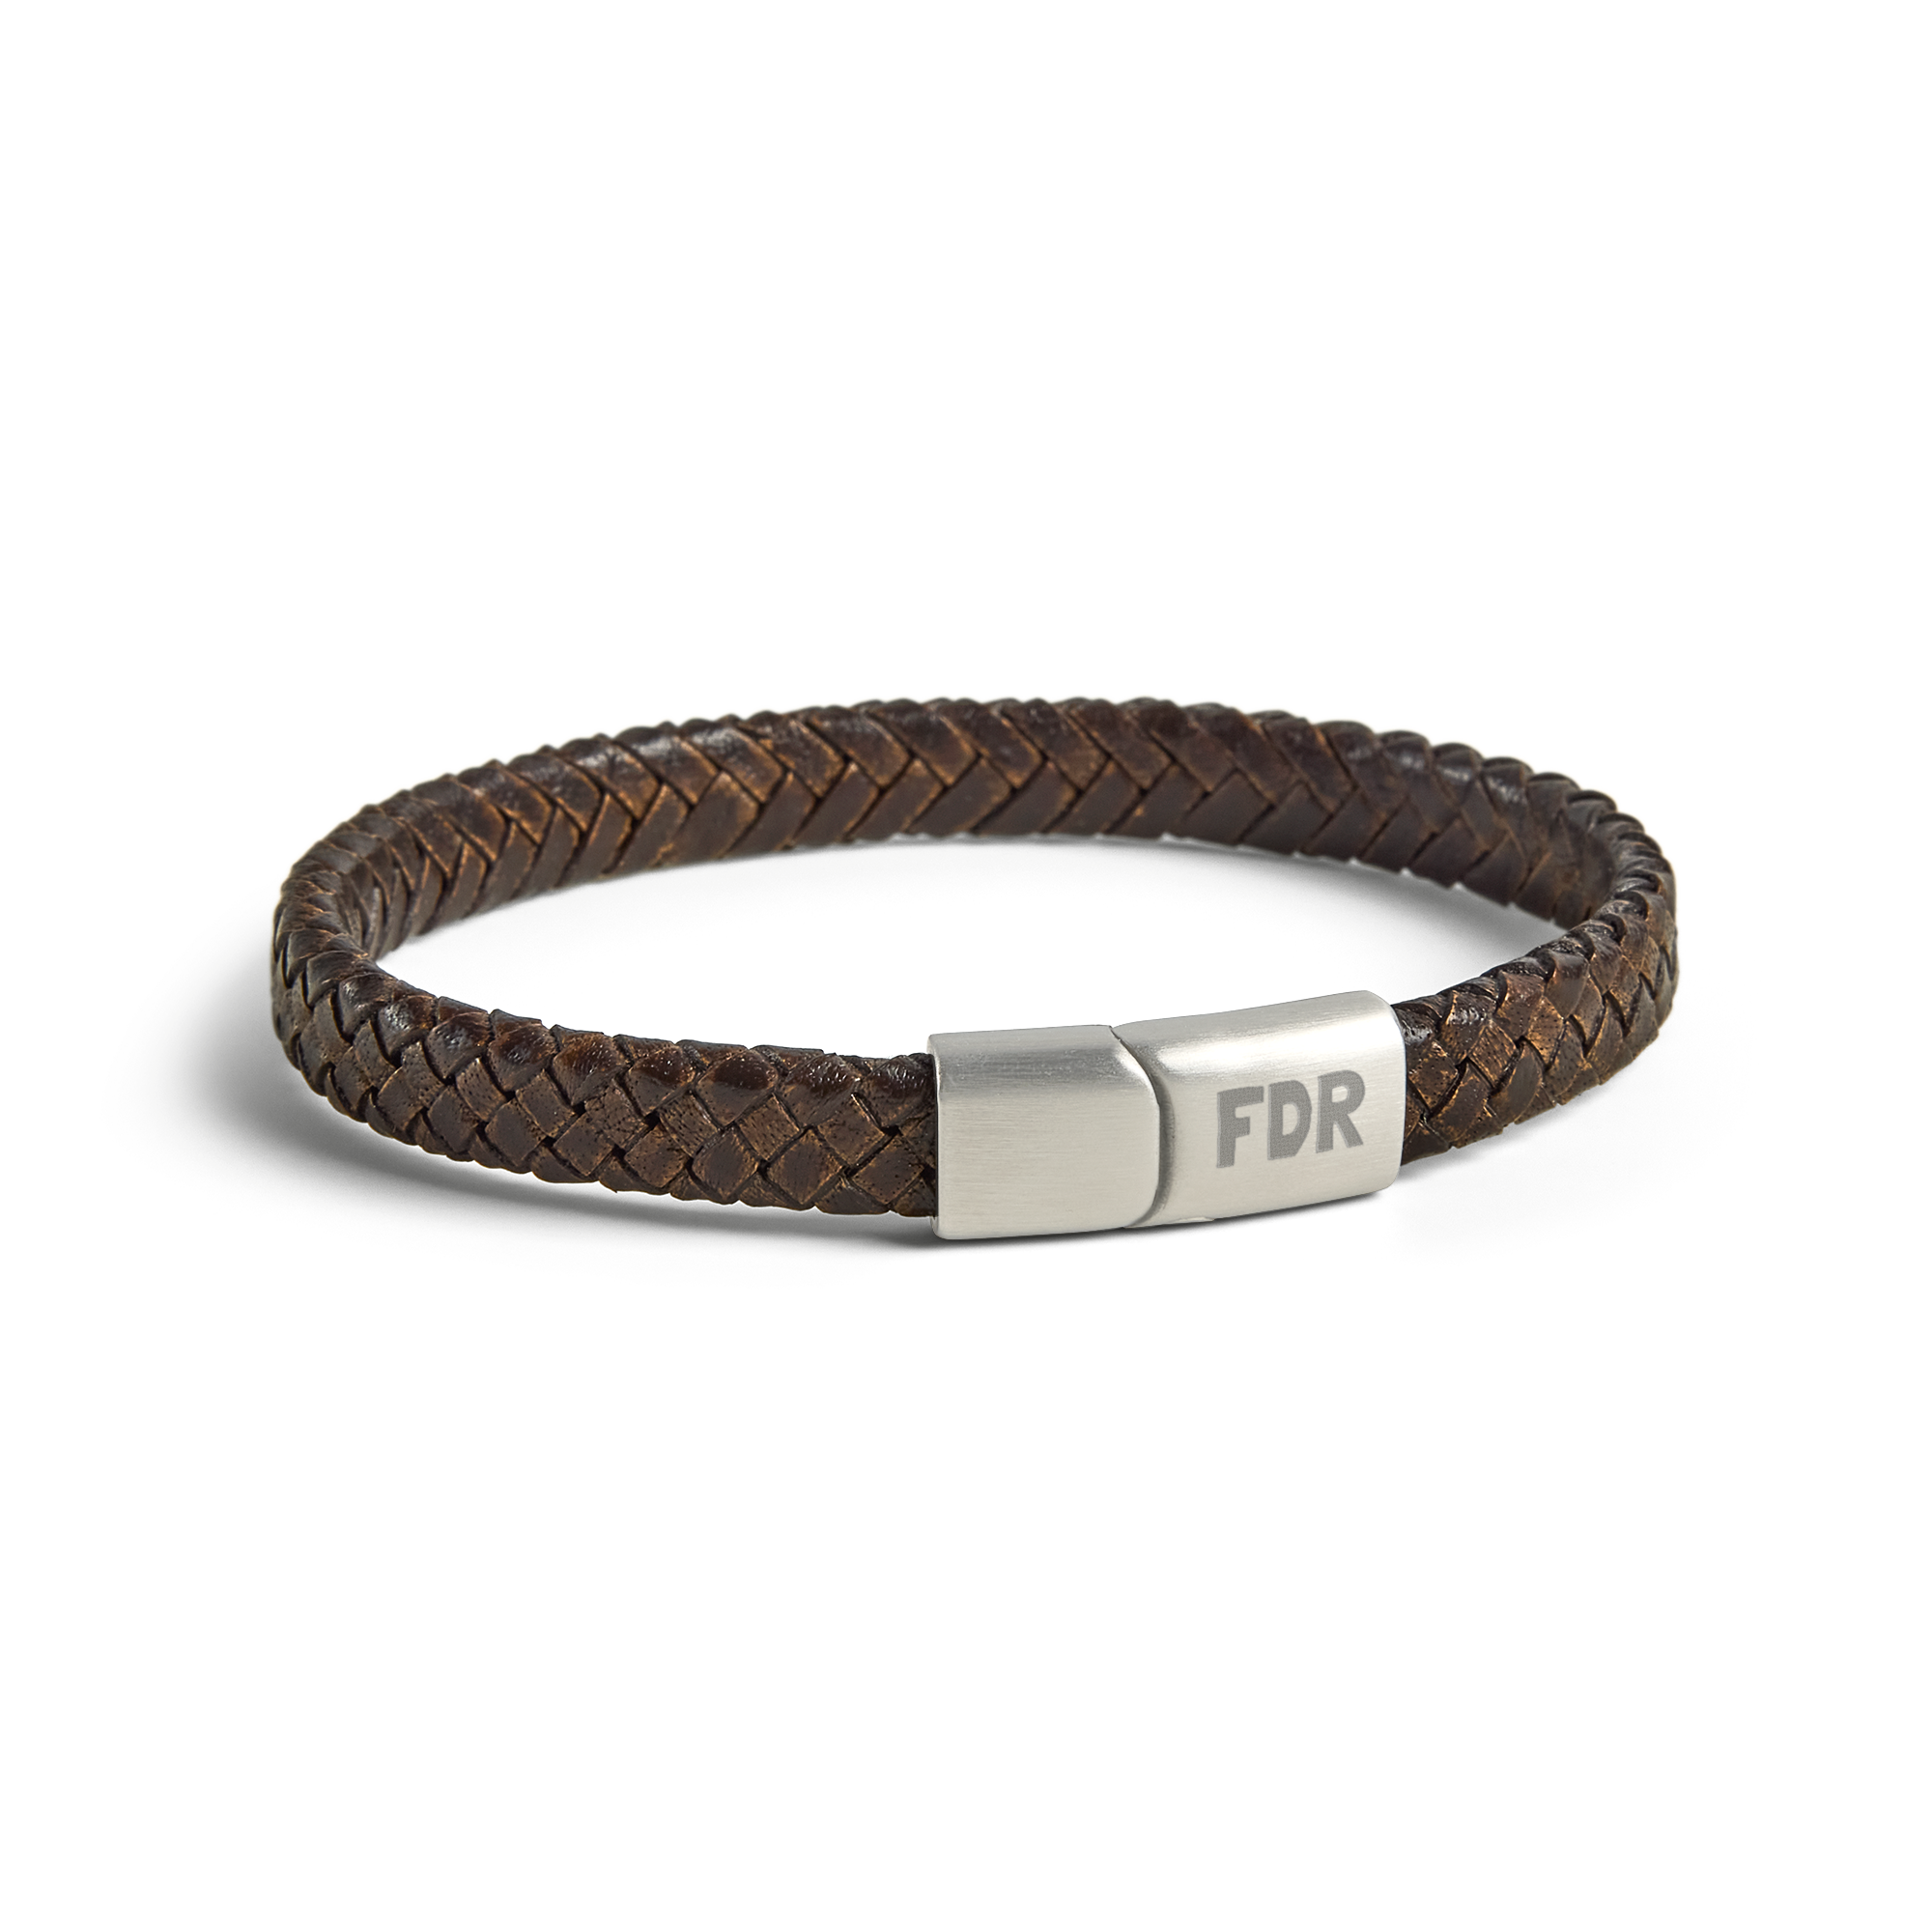 Luxurious leather bracelet - Men - Brown - L 